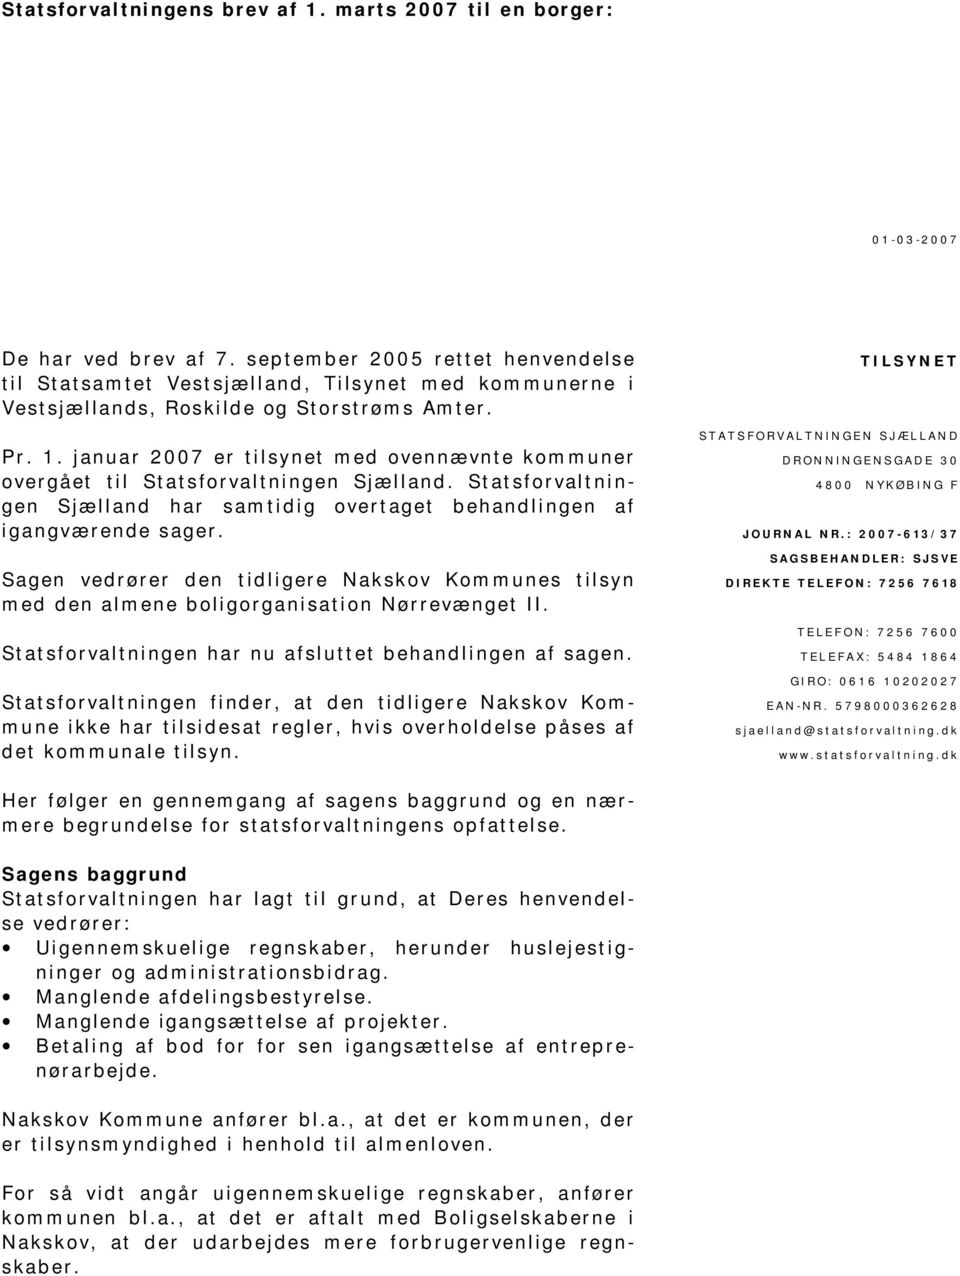 januar 2007 er tilsynet med ovennævnte kommuner overgået til Statsforvaltningen Sjælland. Statsforvaltningen Sjælland har samtidig overtaget behandlingen af igangværende sager.